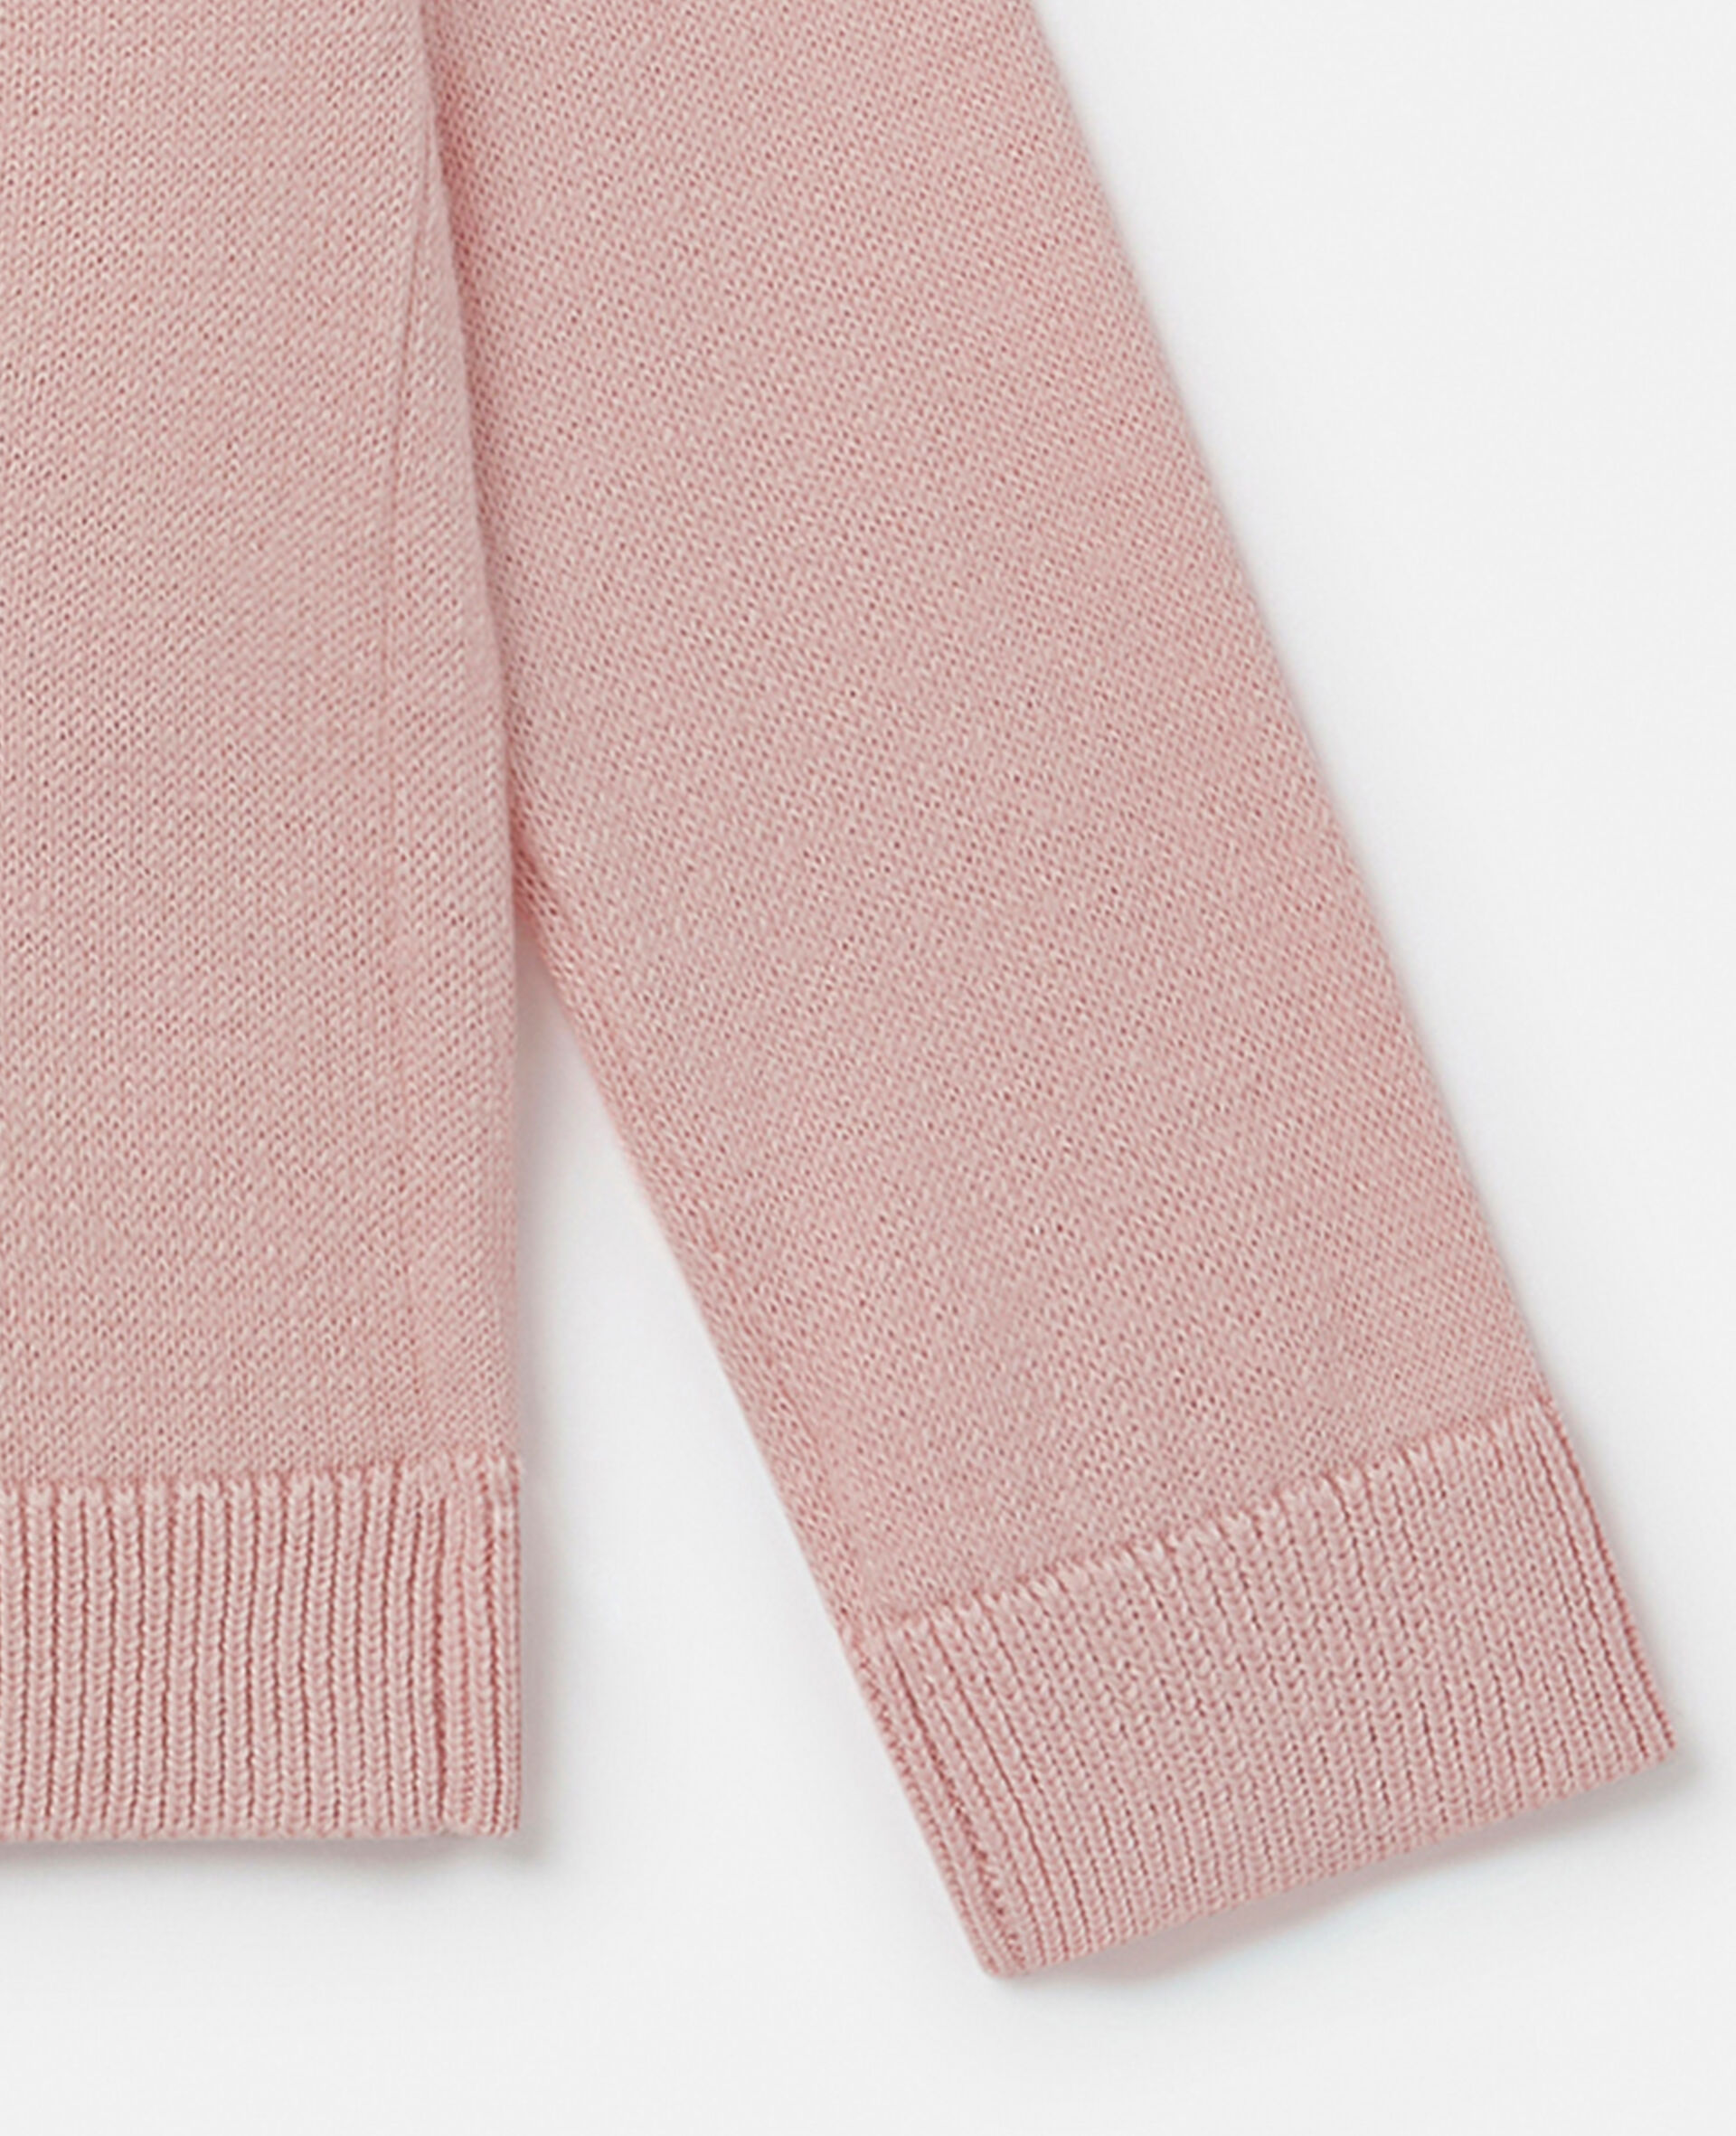 Lion Intarsia Knit Cardigan-Pink-large image number 3